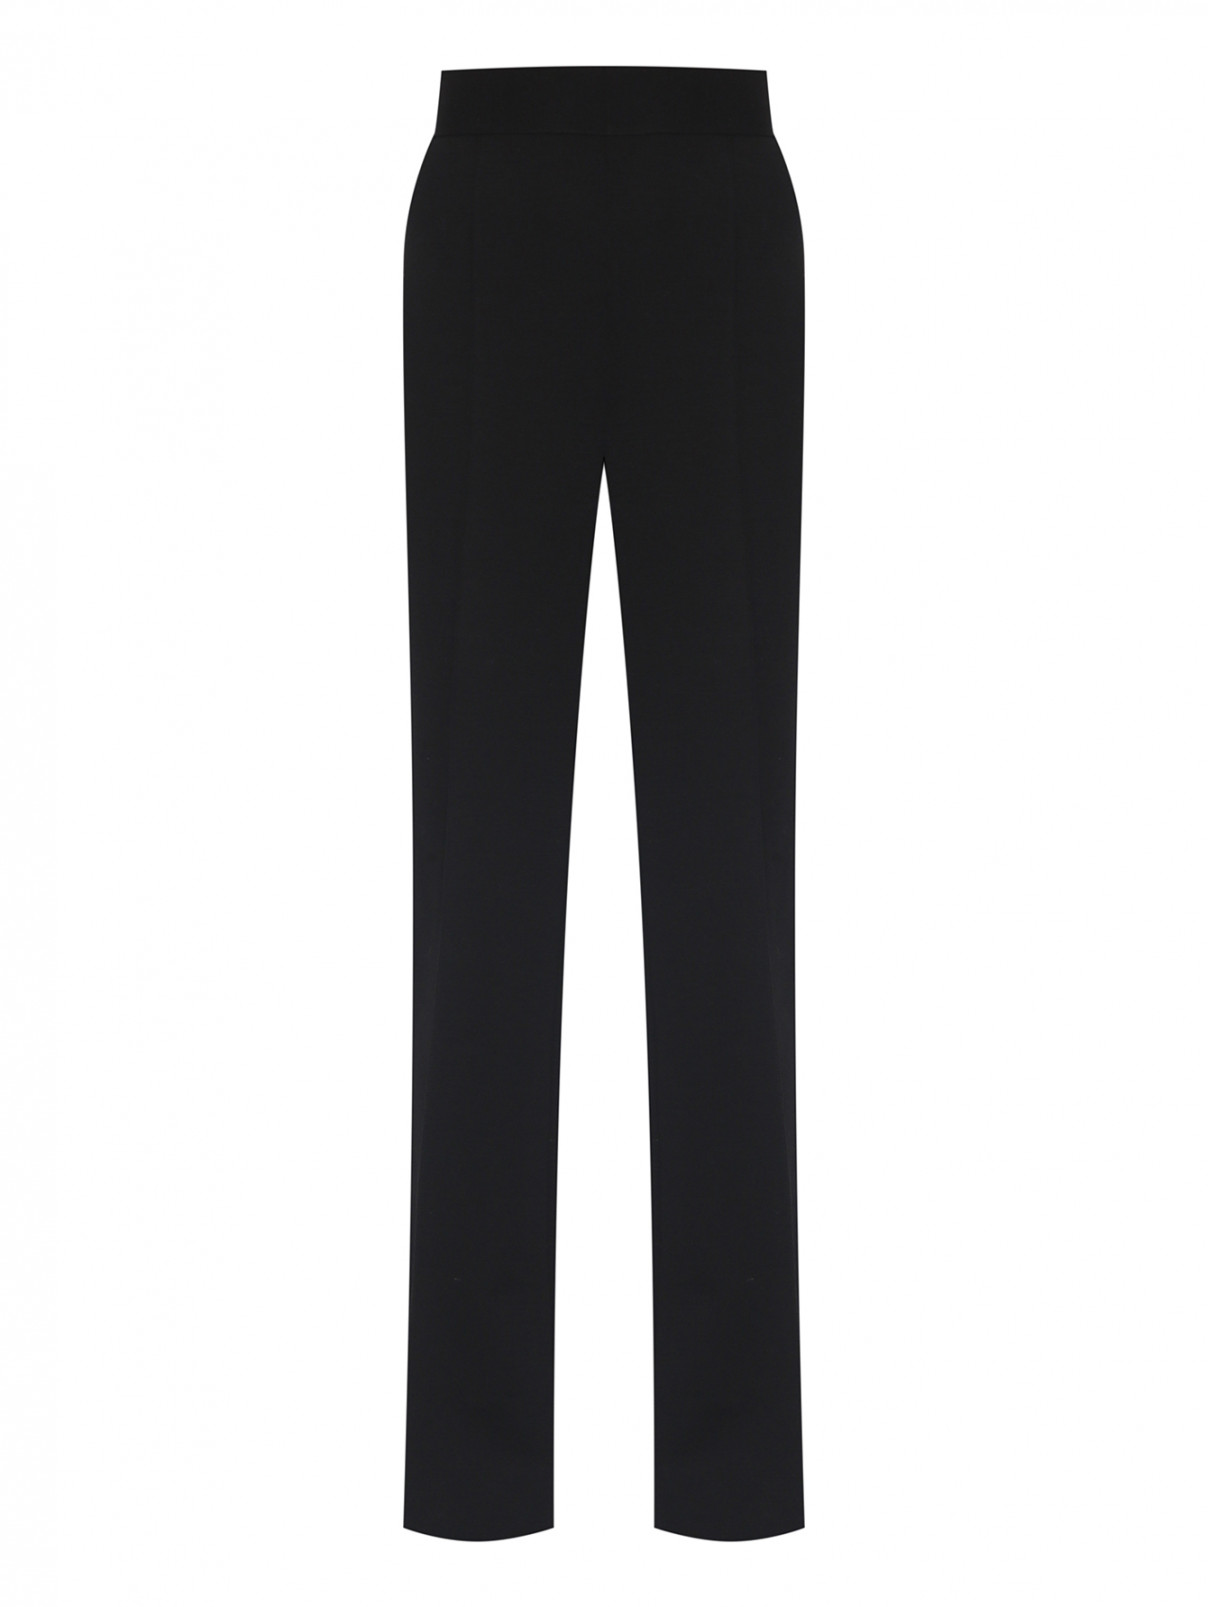 Трикотажные брюки-клеш на резинке Luisa Spagnoli  –  Общий вид  – Цвет:  Черный